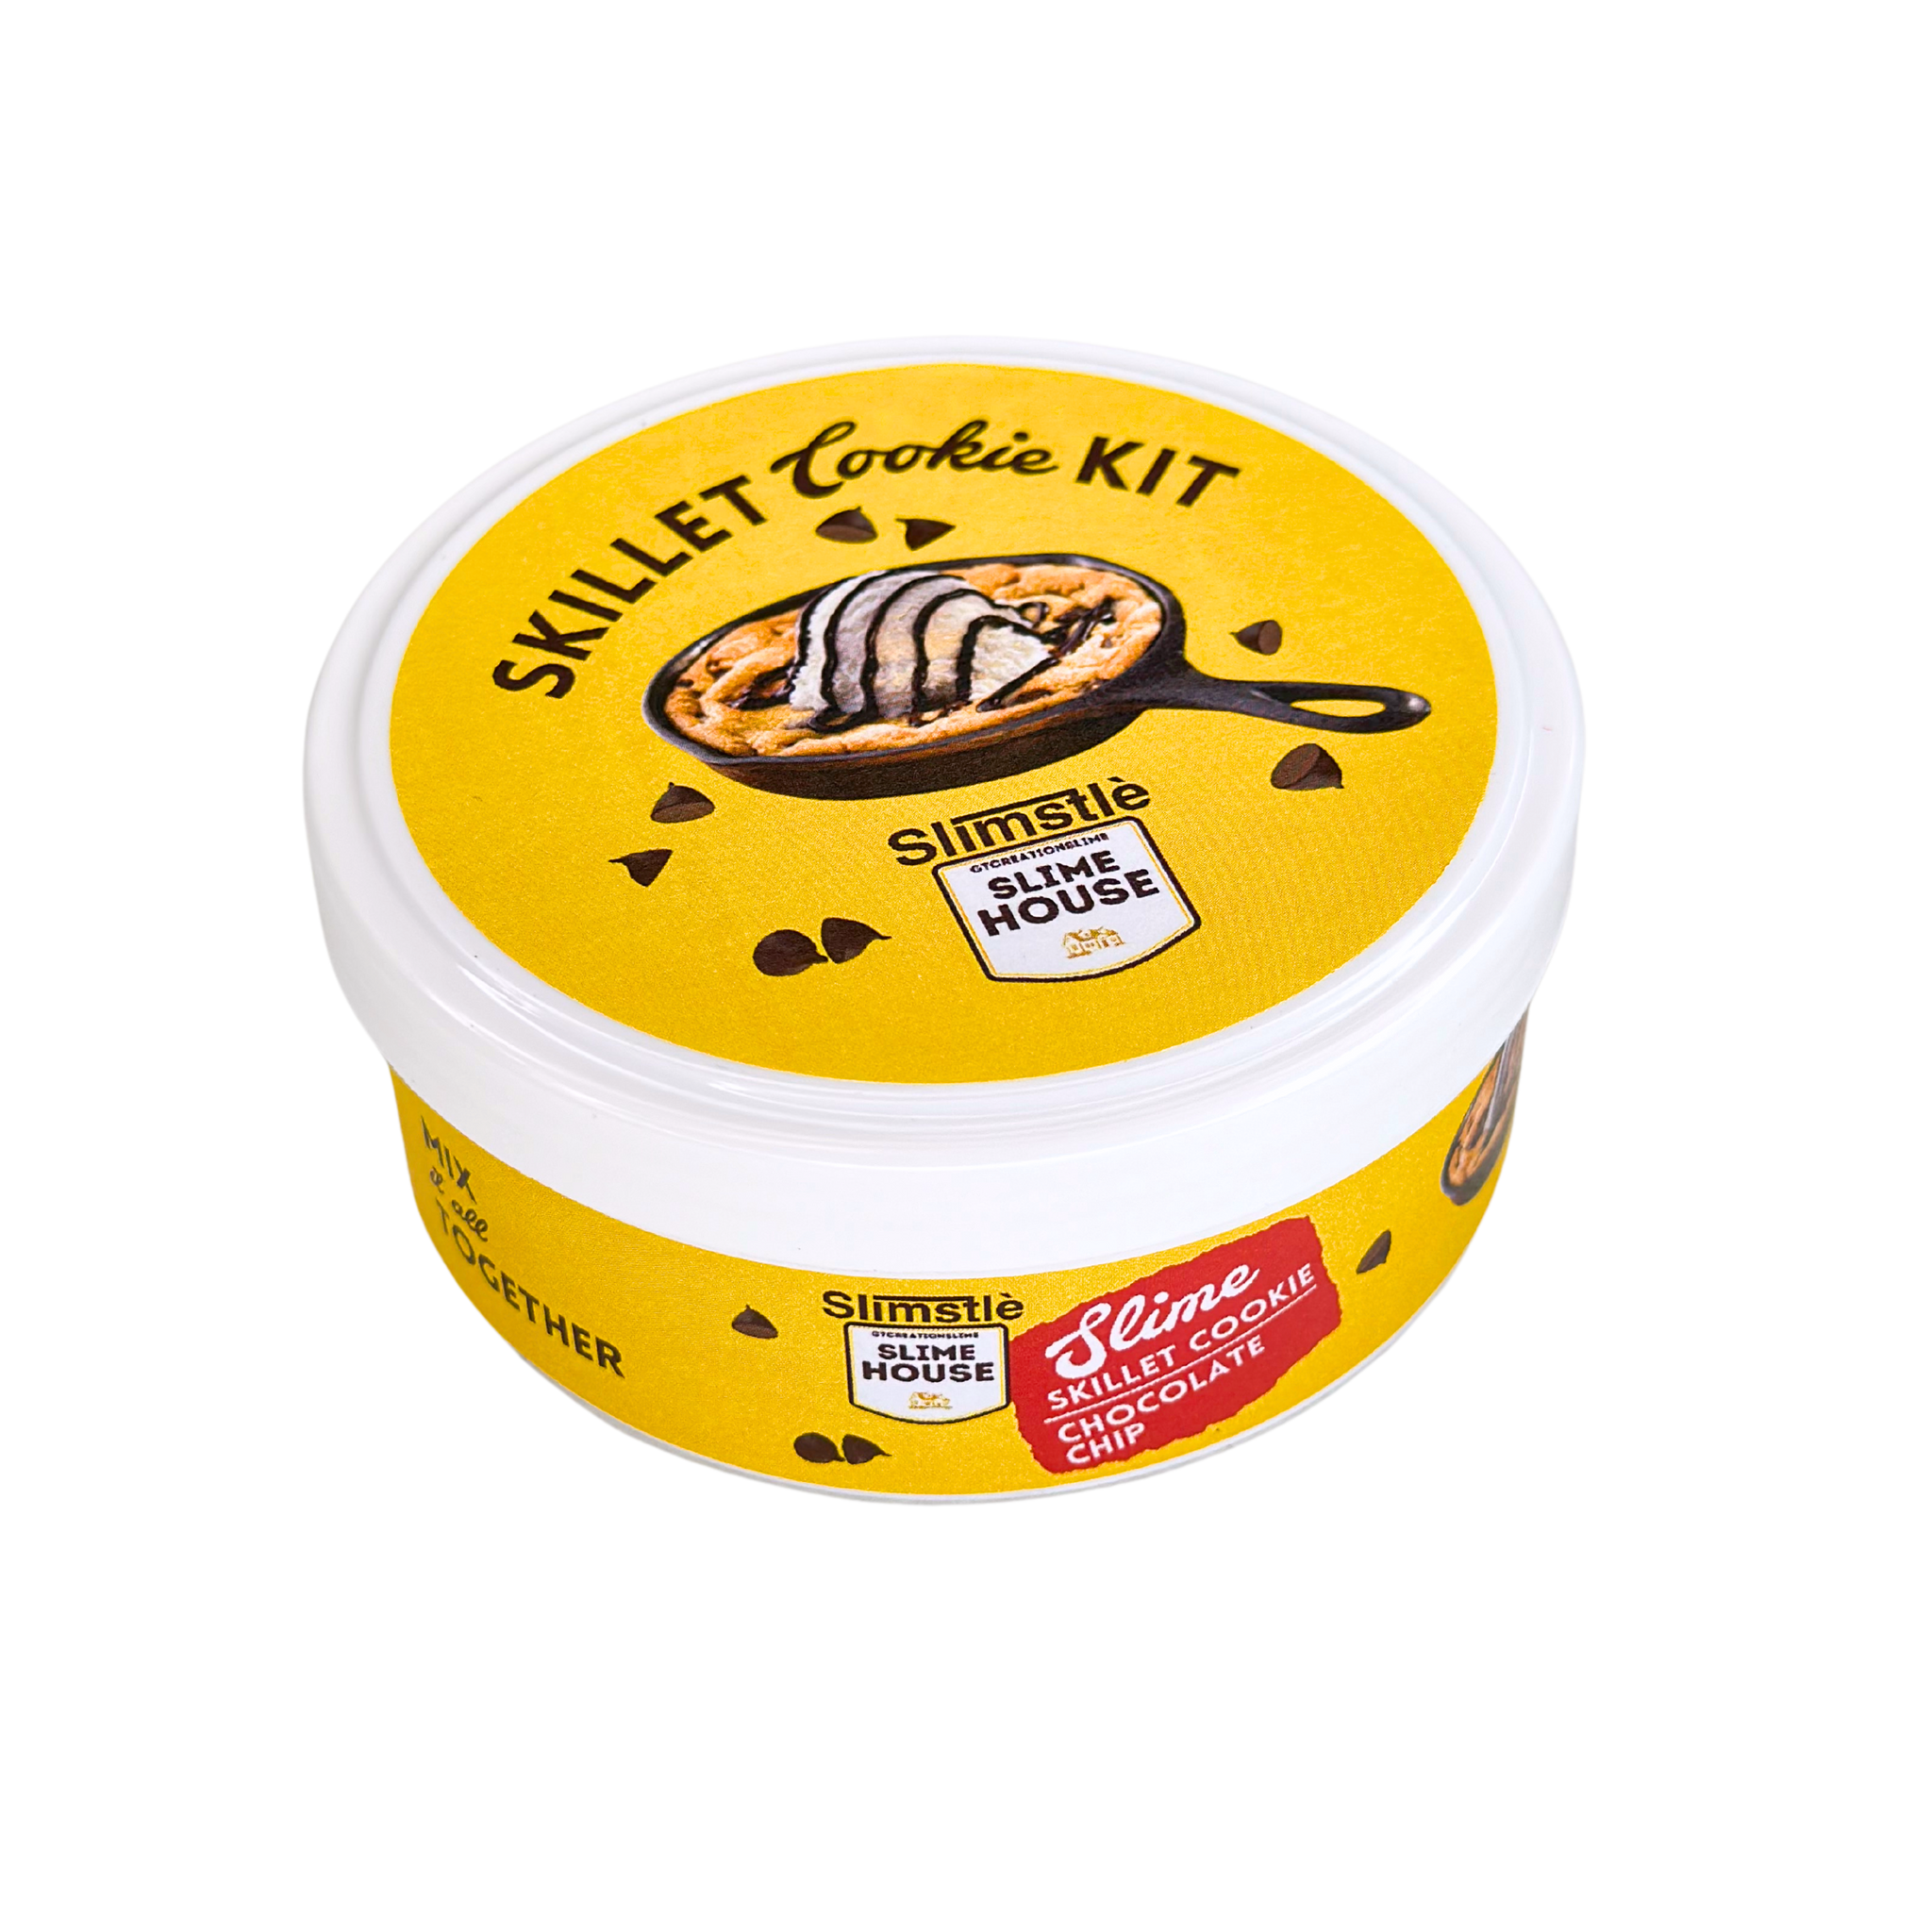 Skittle Cookie Kit